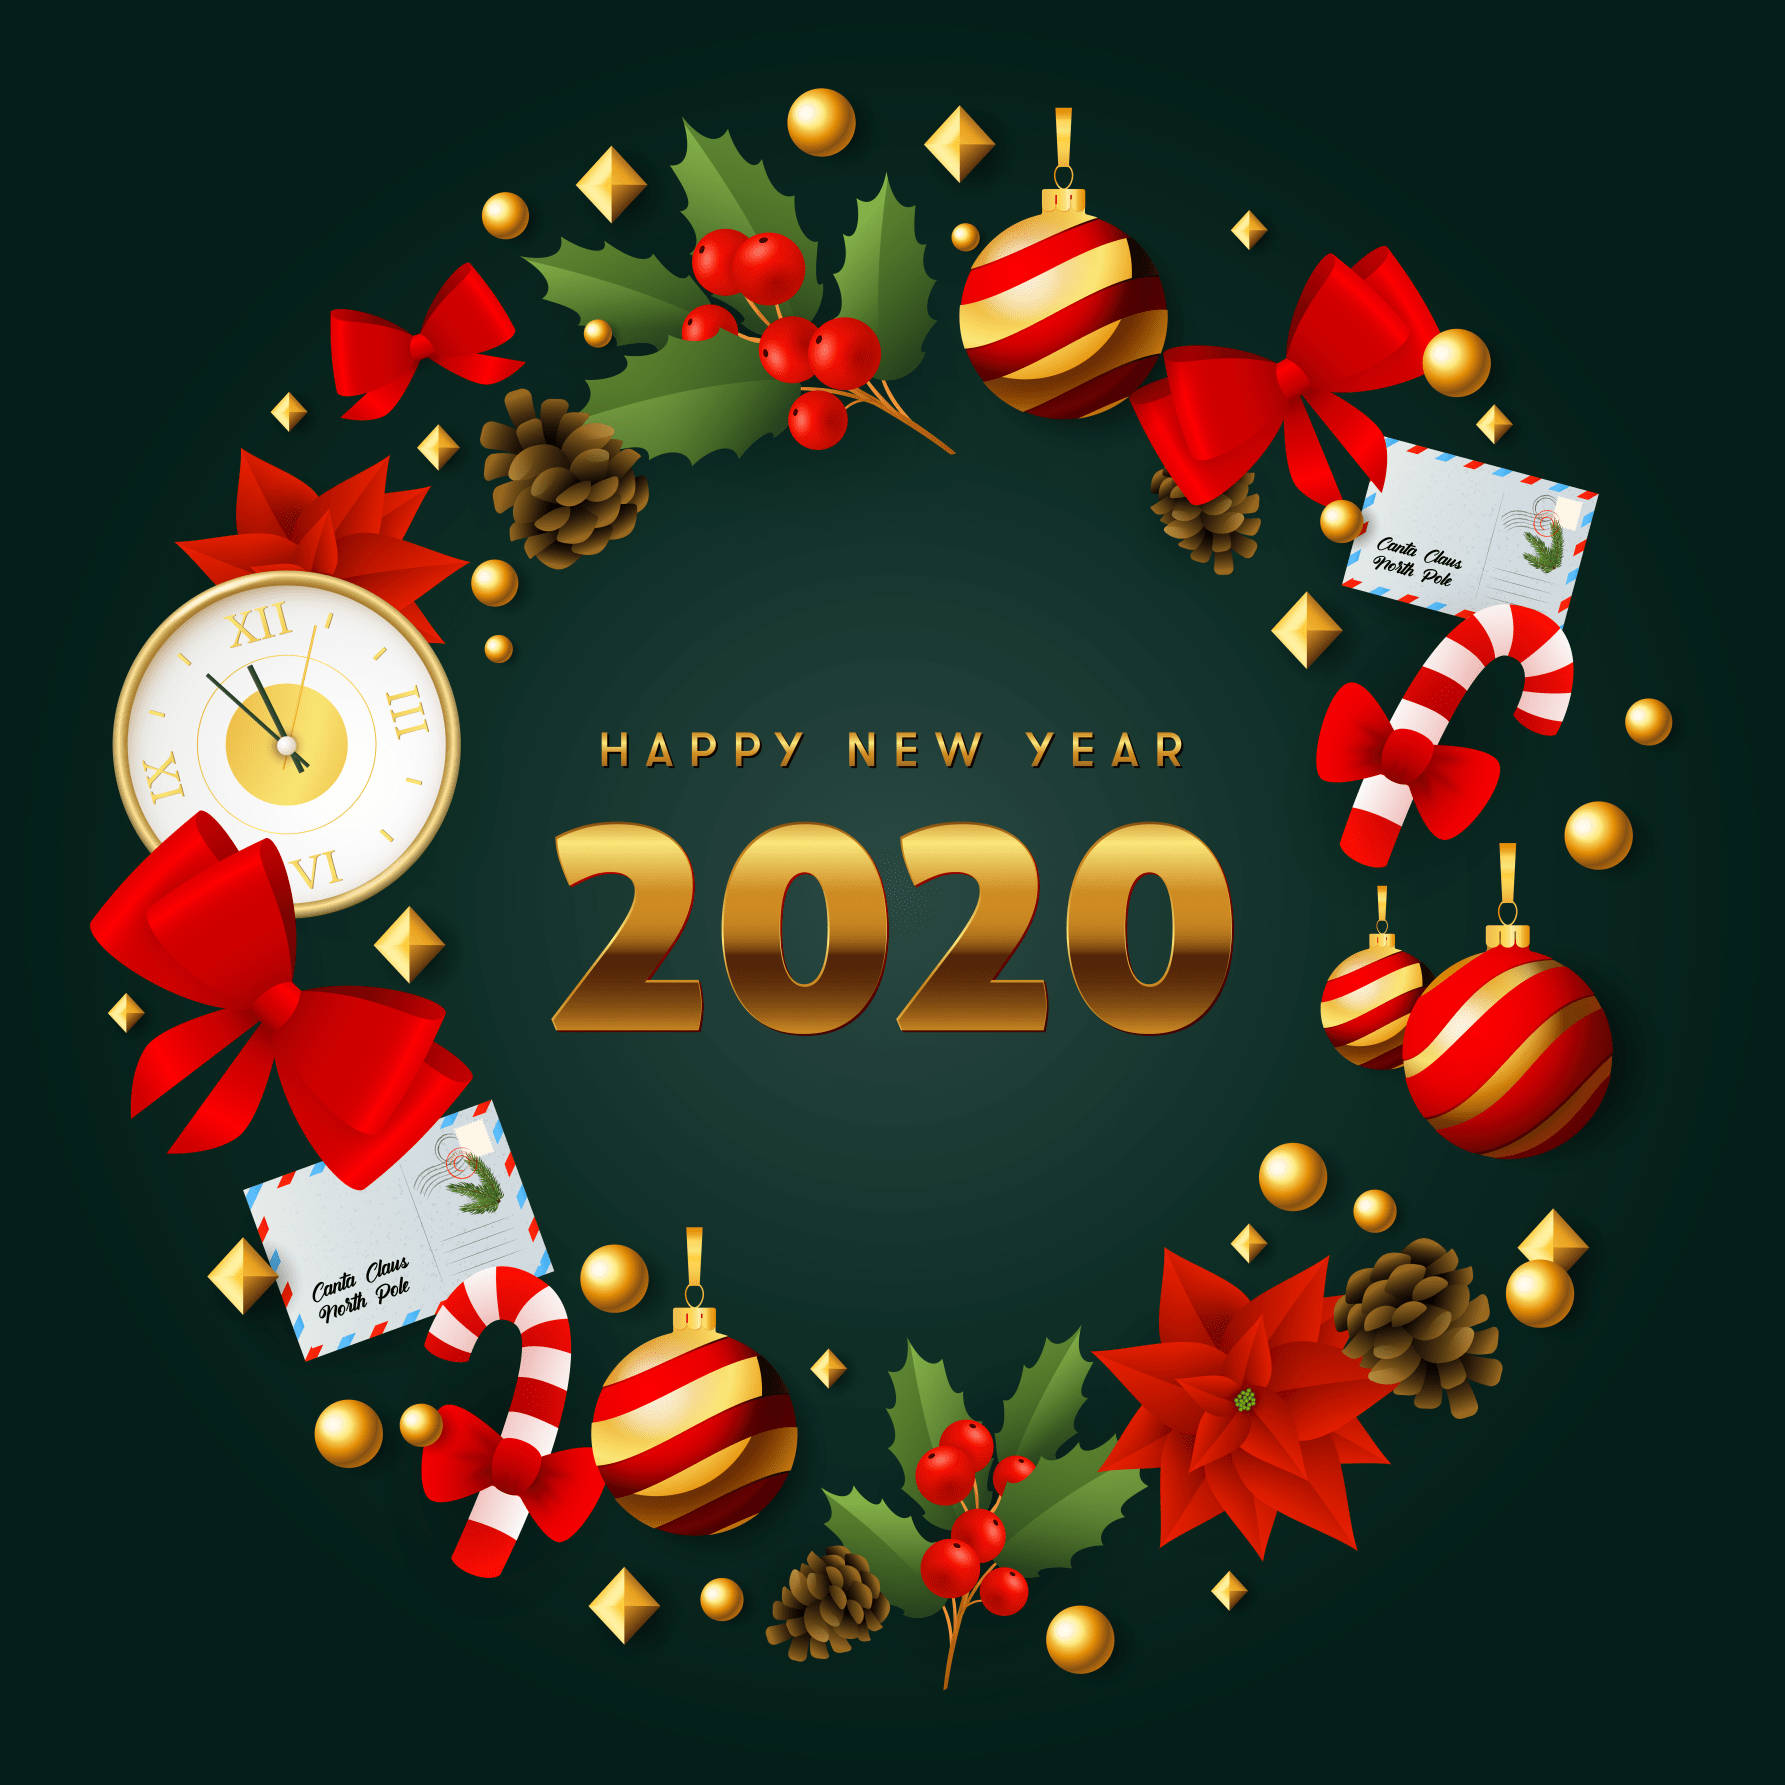 Willkommenin Den Frischen Start Des Jahres 2020 Mit Einem Wunsch Für Ein Frohes Neues Jahr! Wallpaper